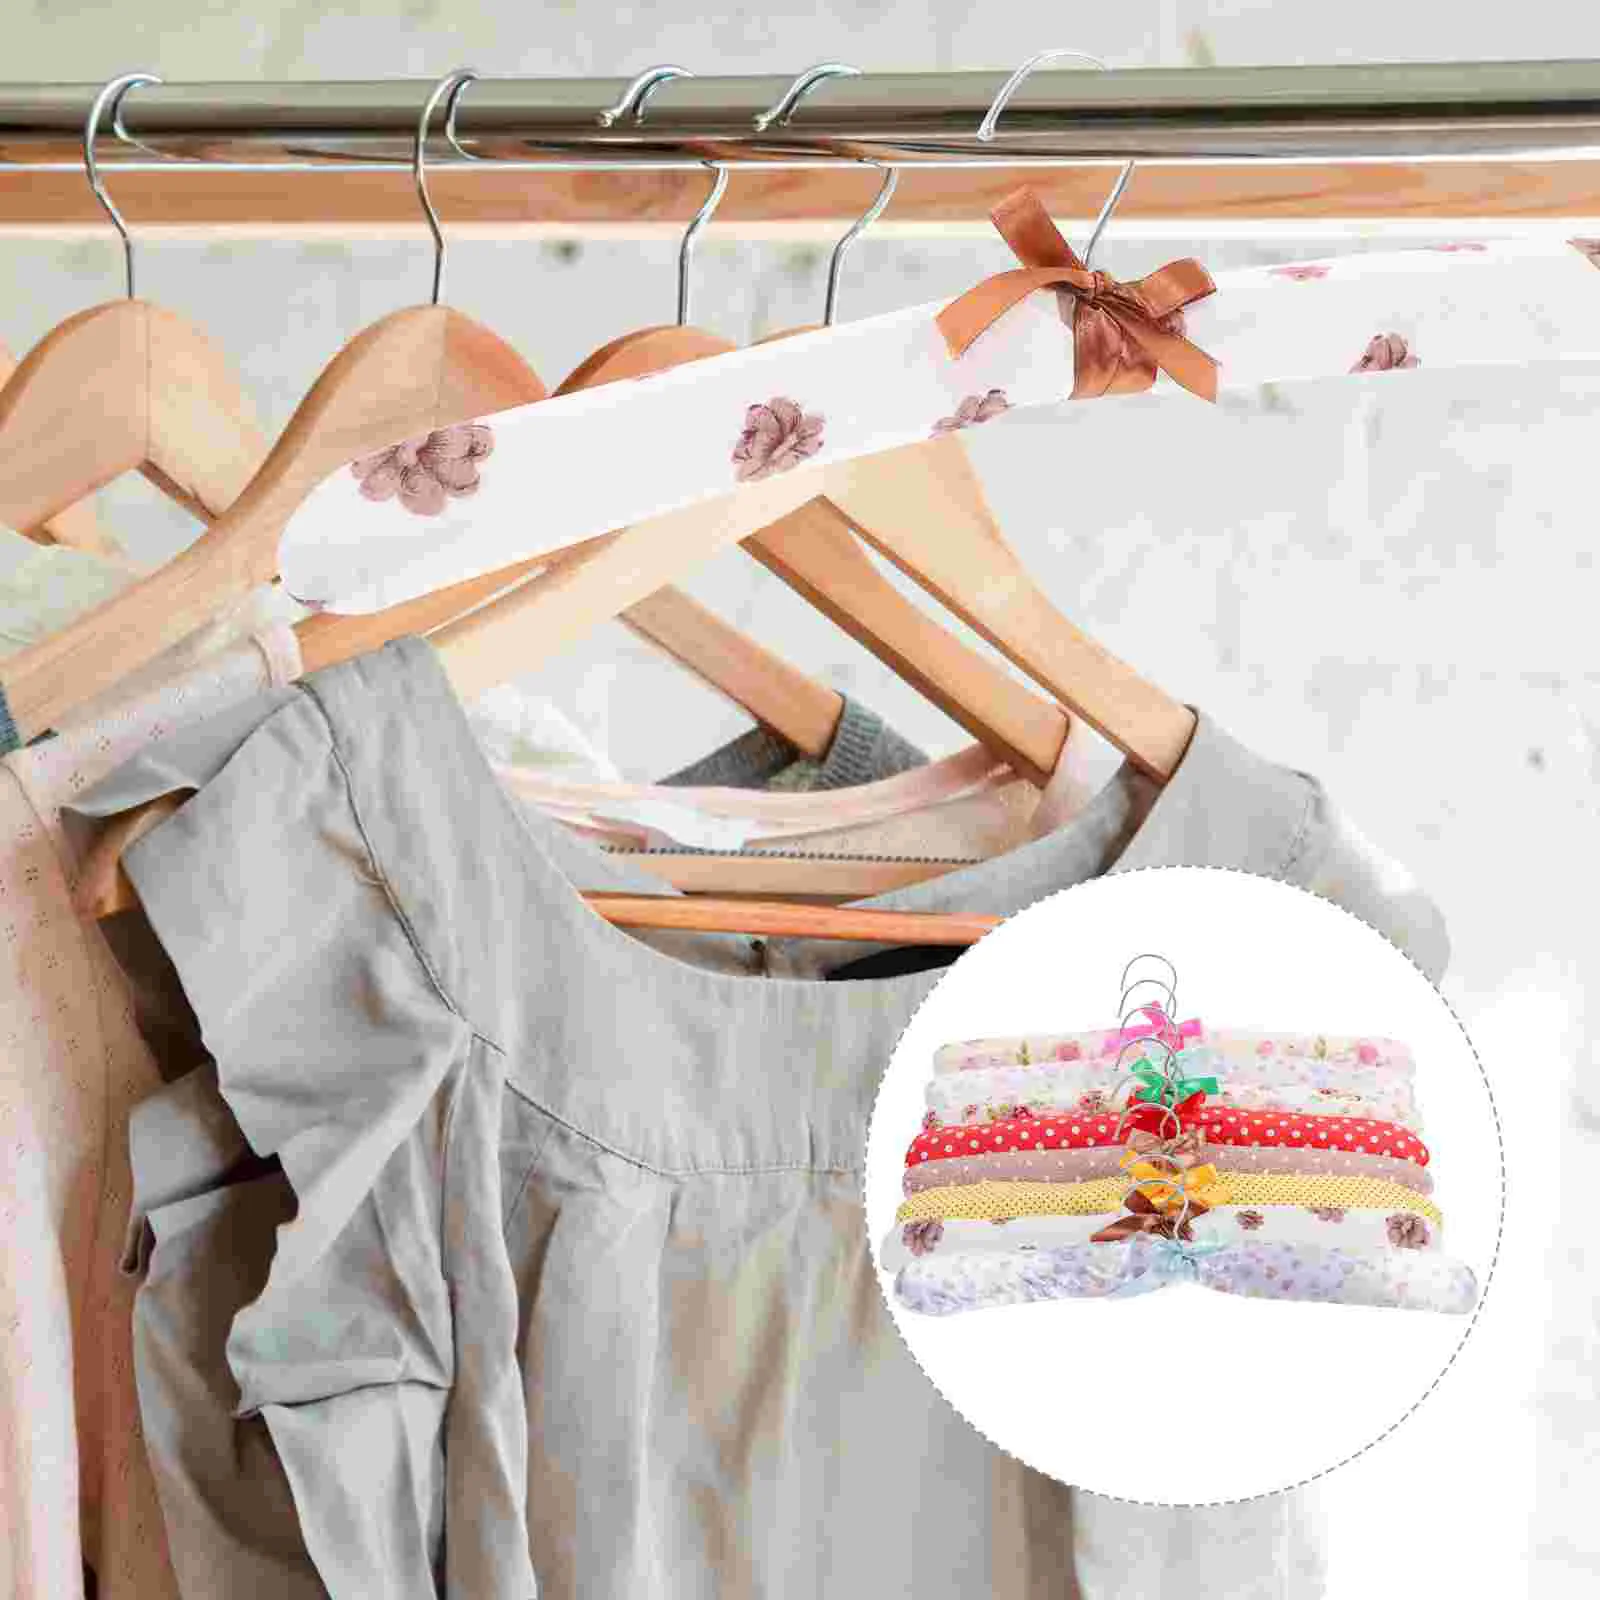 

10 Pcs Wedding Hanger Coat Hangers Sweater Hangers Calico Bag Satin Hangers Wooden Suit Clothes Hangers Women's